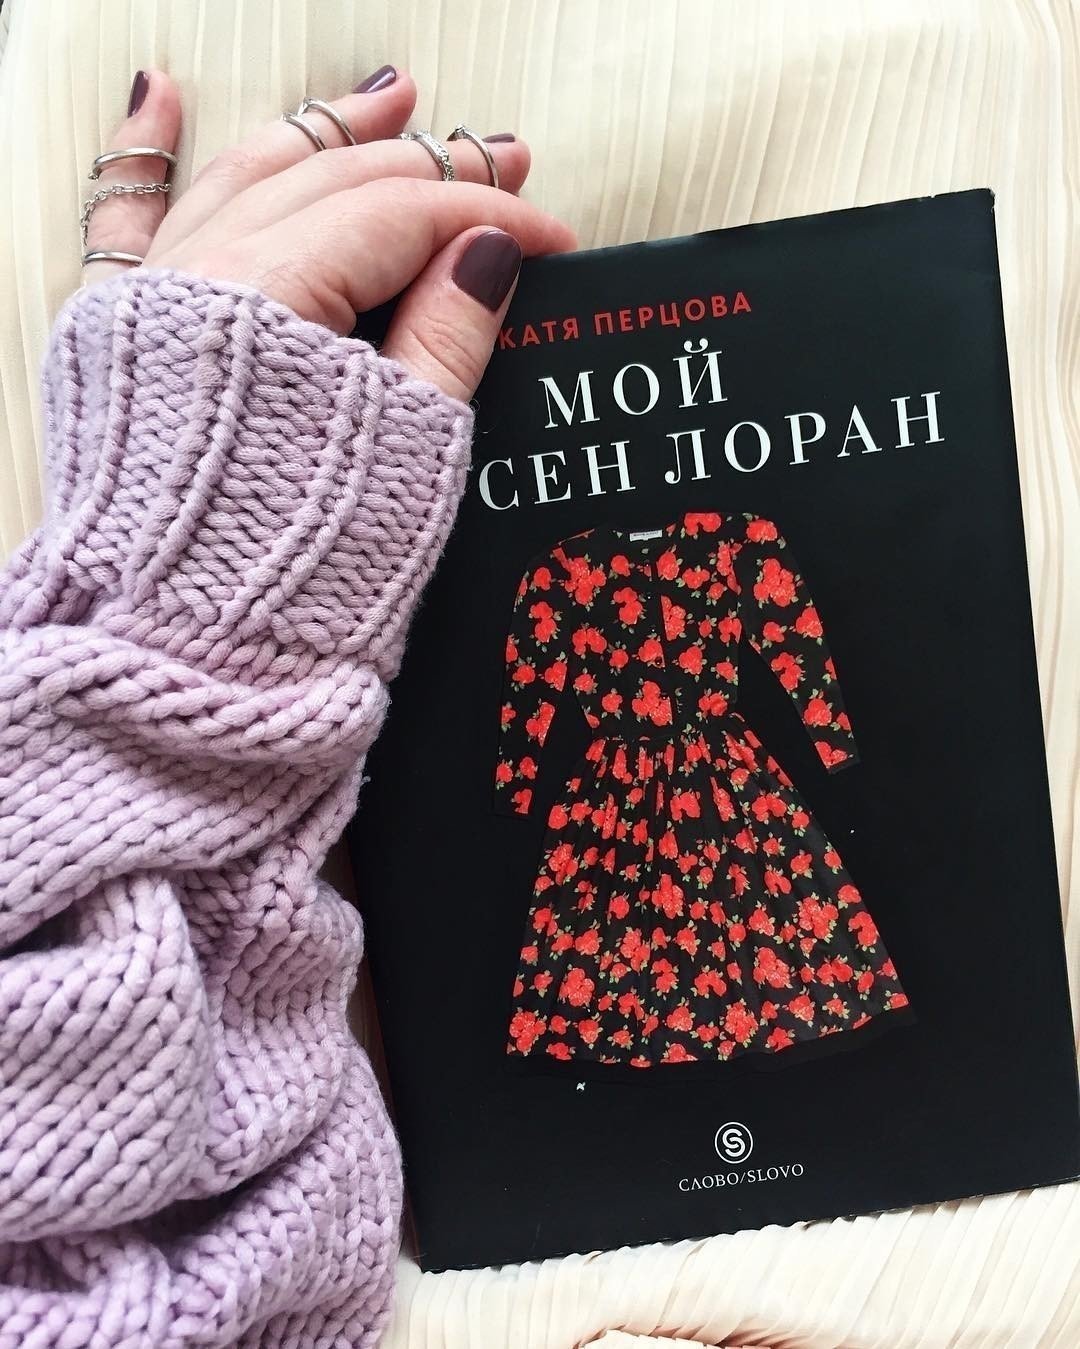 Катя перцова «мой ив сен-лоран» книга